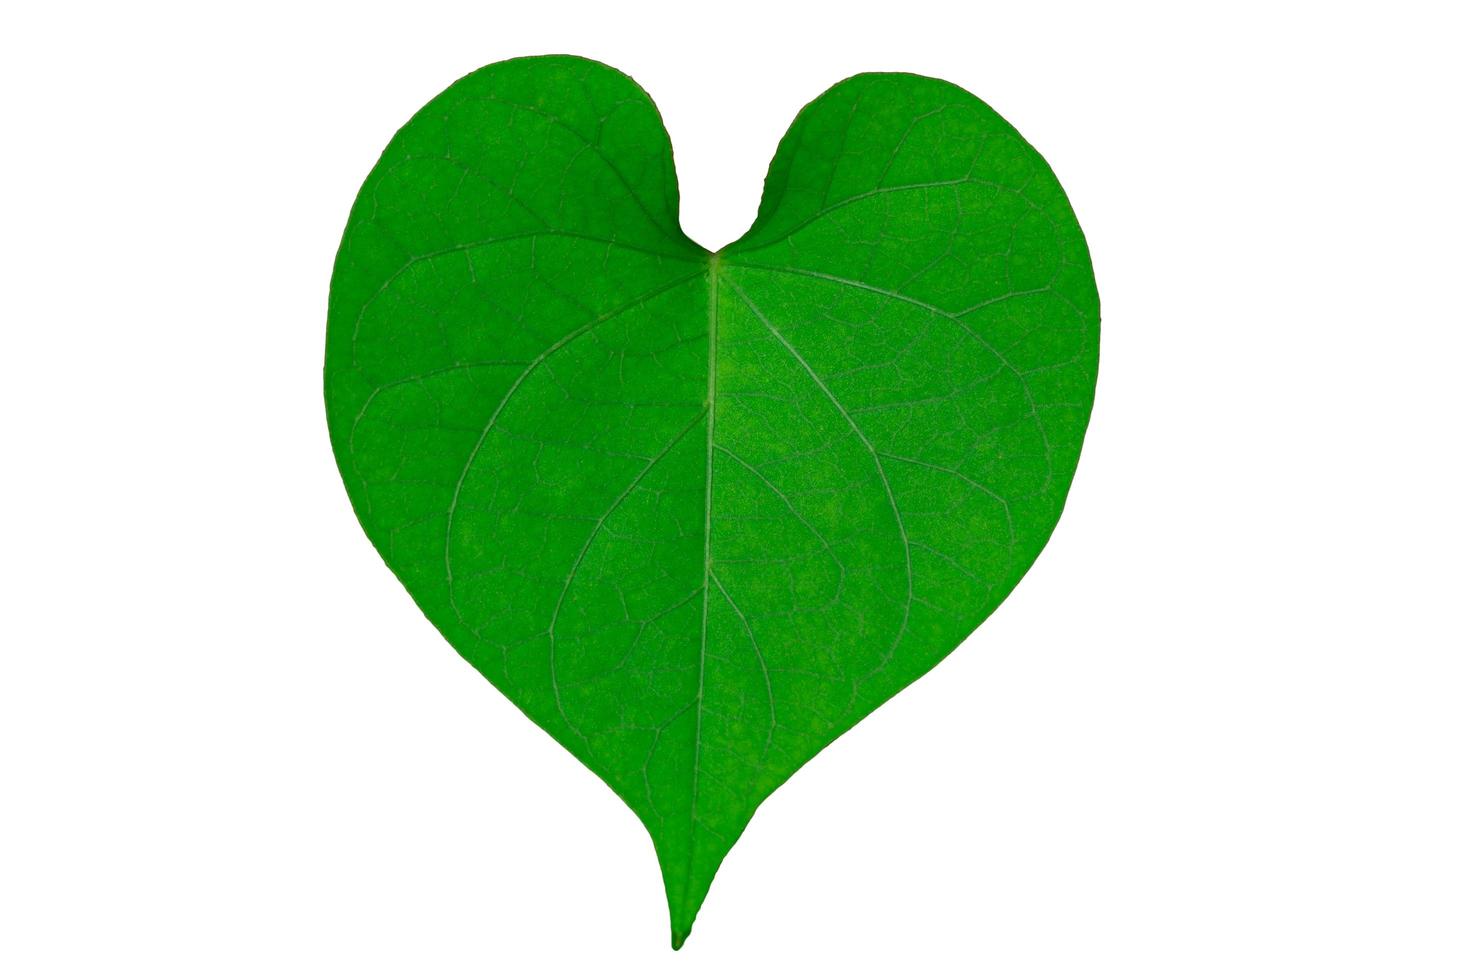 Heart-shaped leaf on white background photo